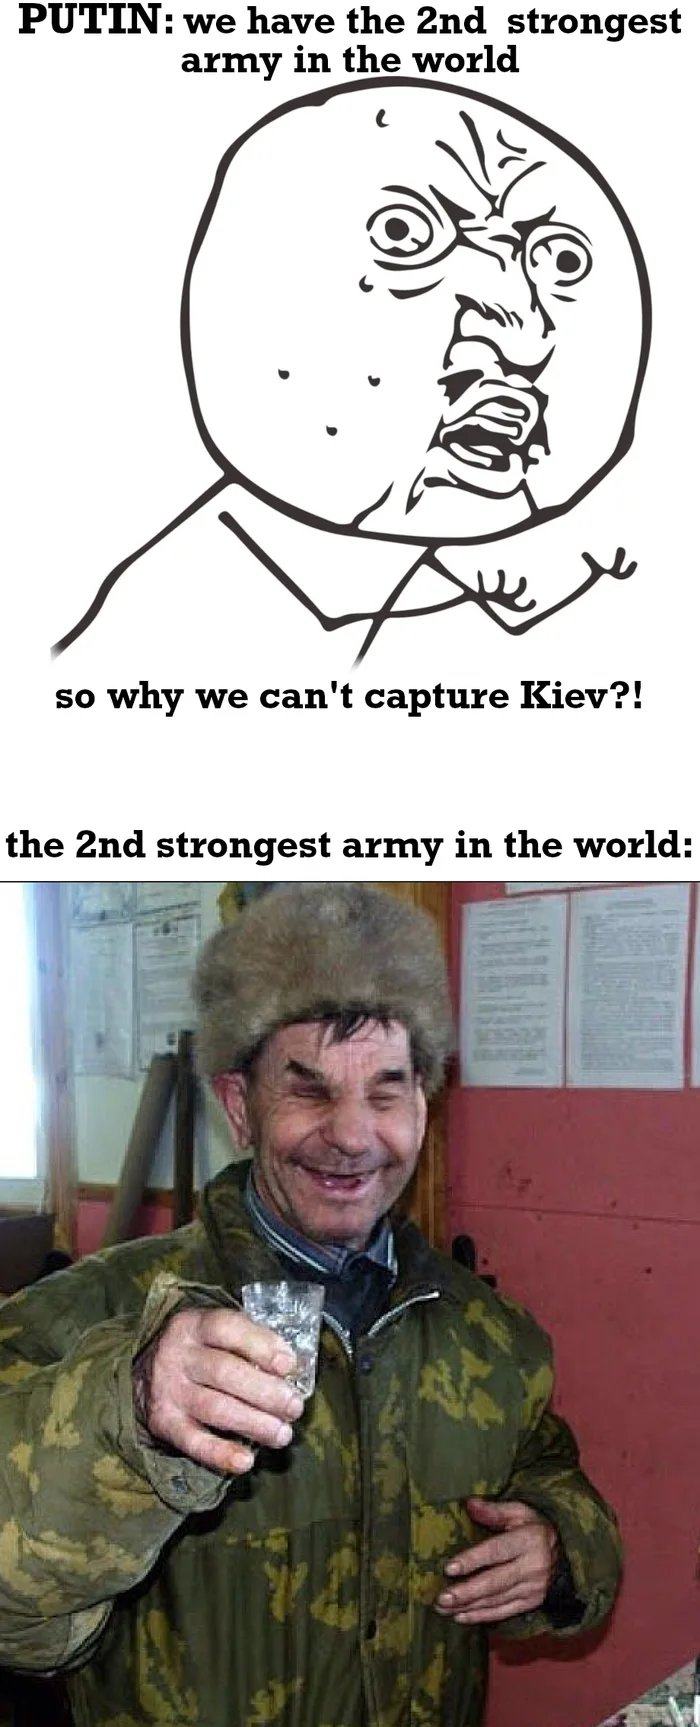 Obrázek 2nd-strongest-army-in-Ukraine